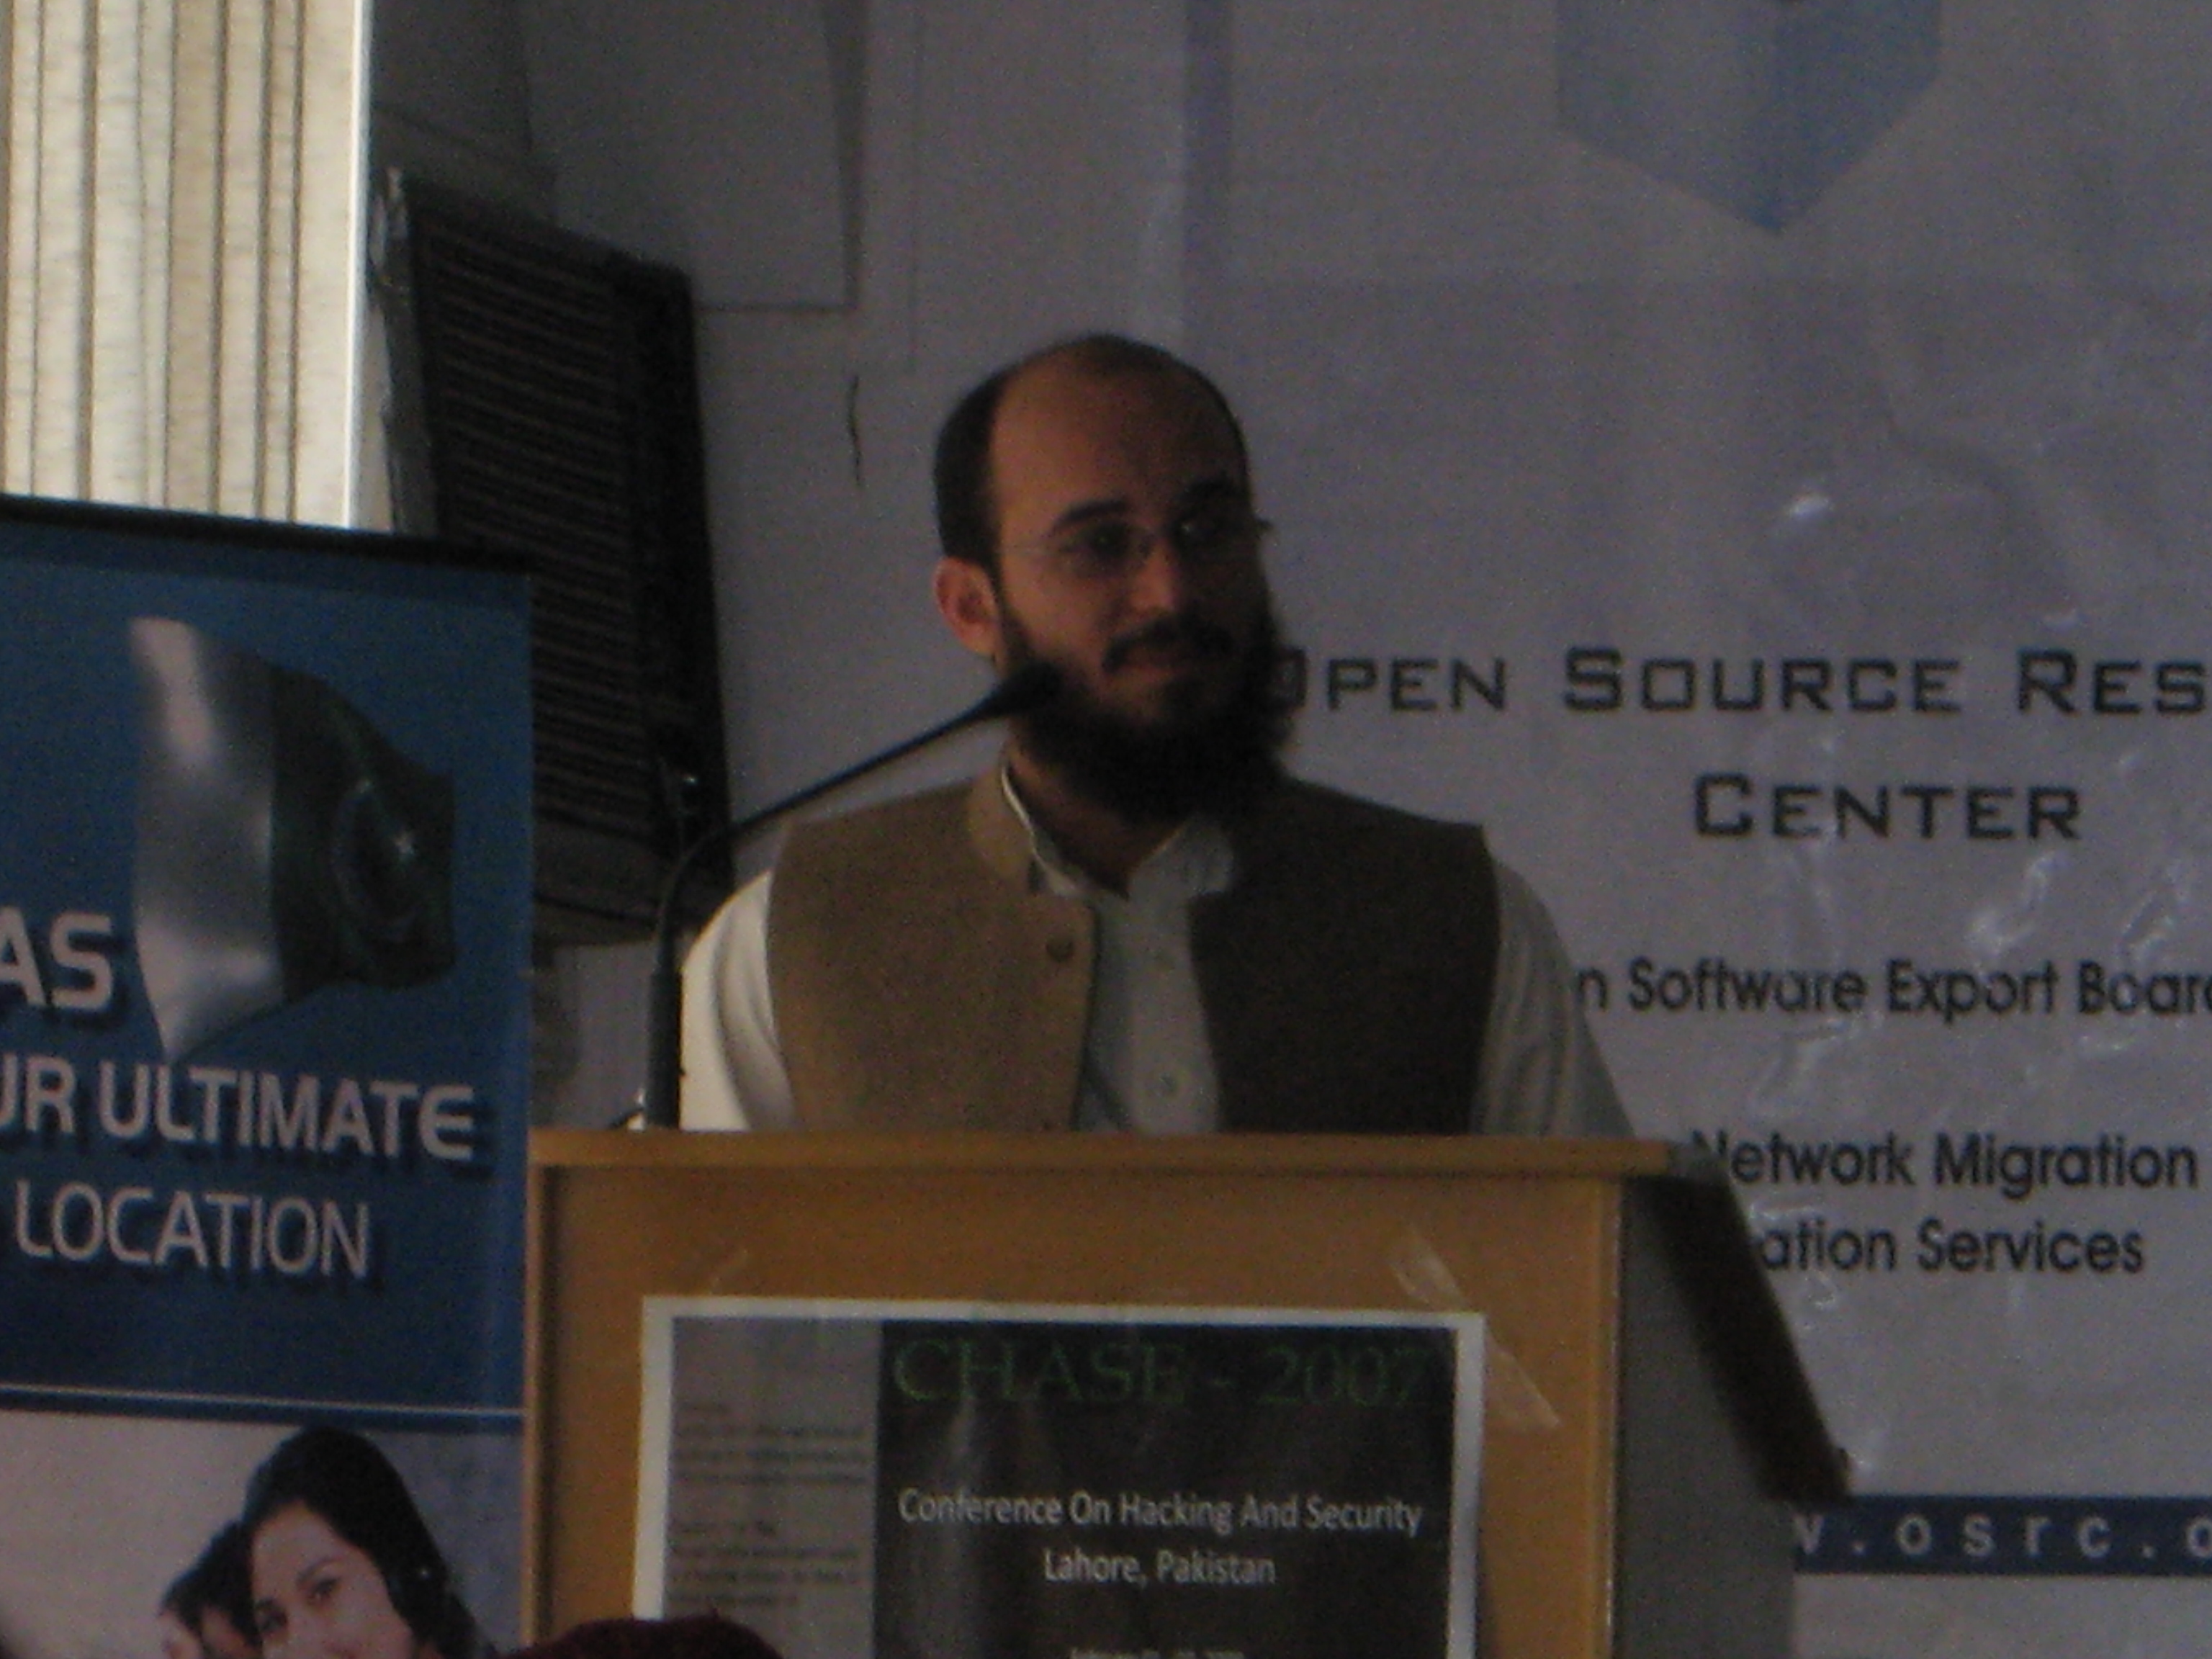 Mr. Sufyan Kakakhel during his keynote address.